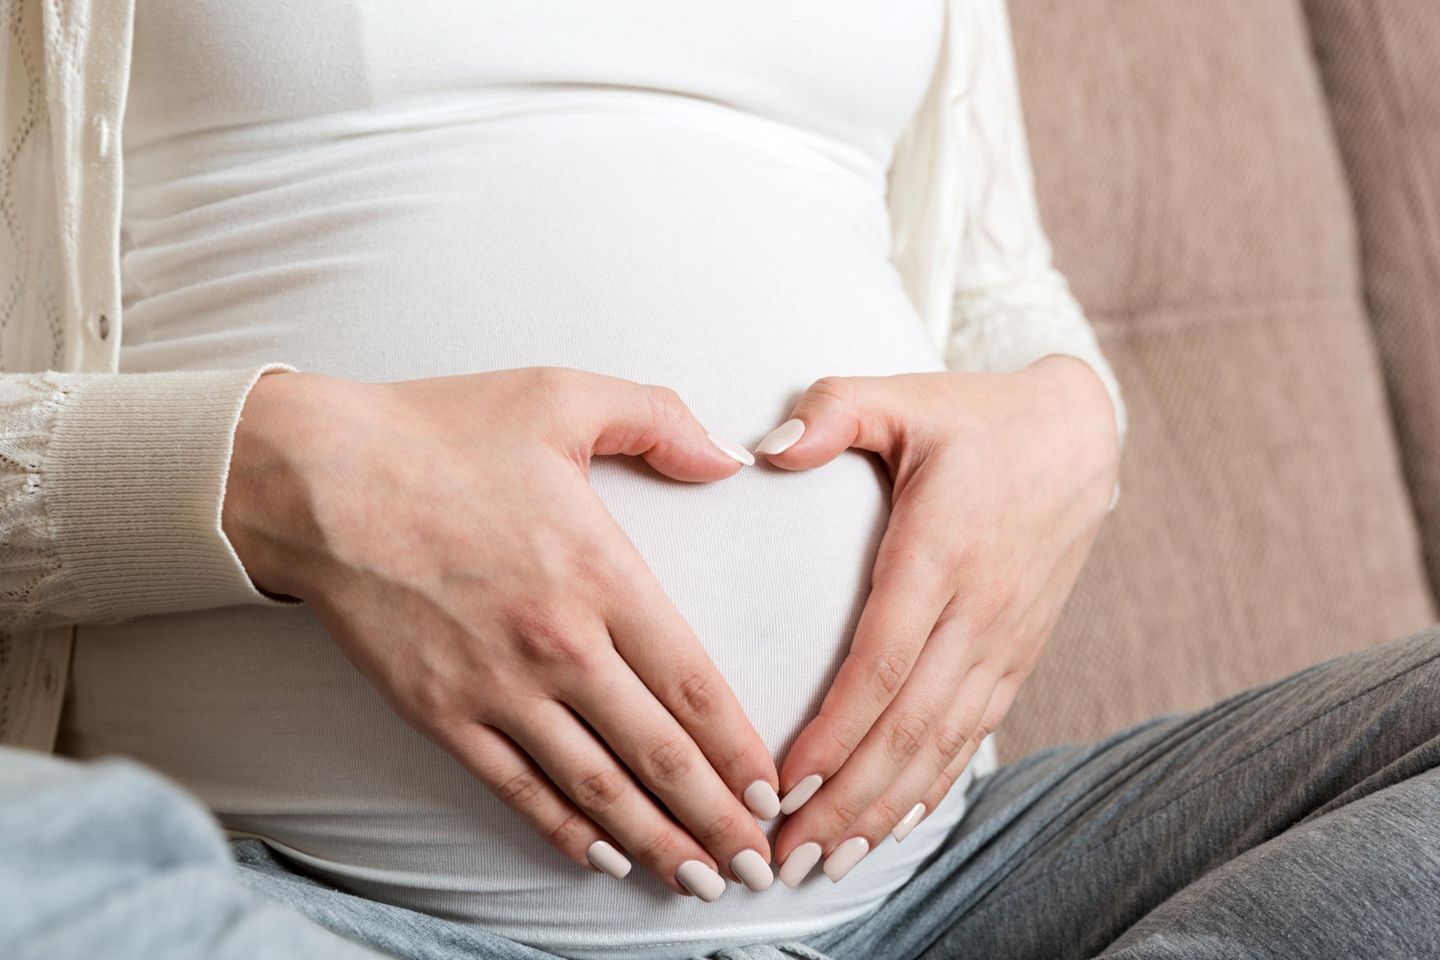 Vorderwandplazenta: Schwangere Person hält die Hände zum Herz geformt vor dem Bauch